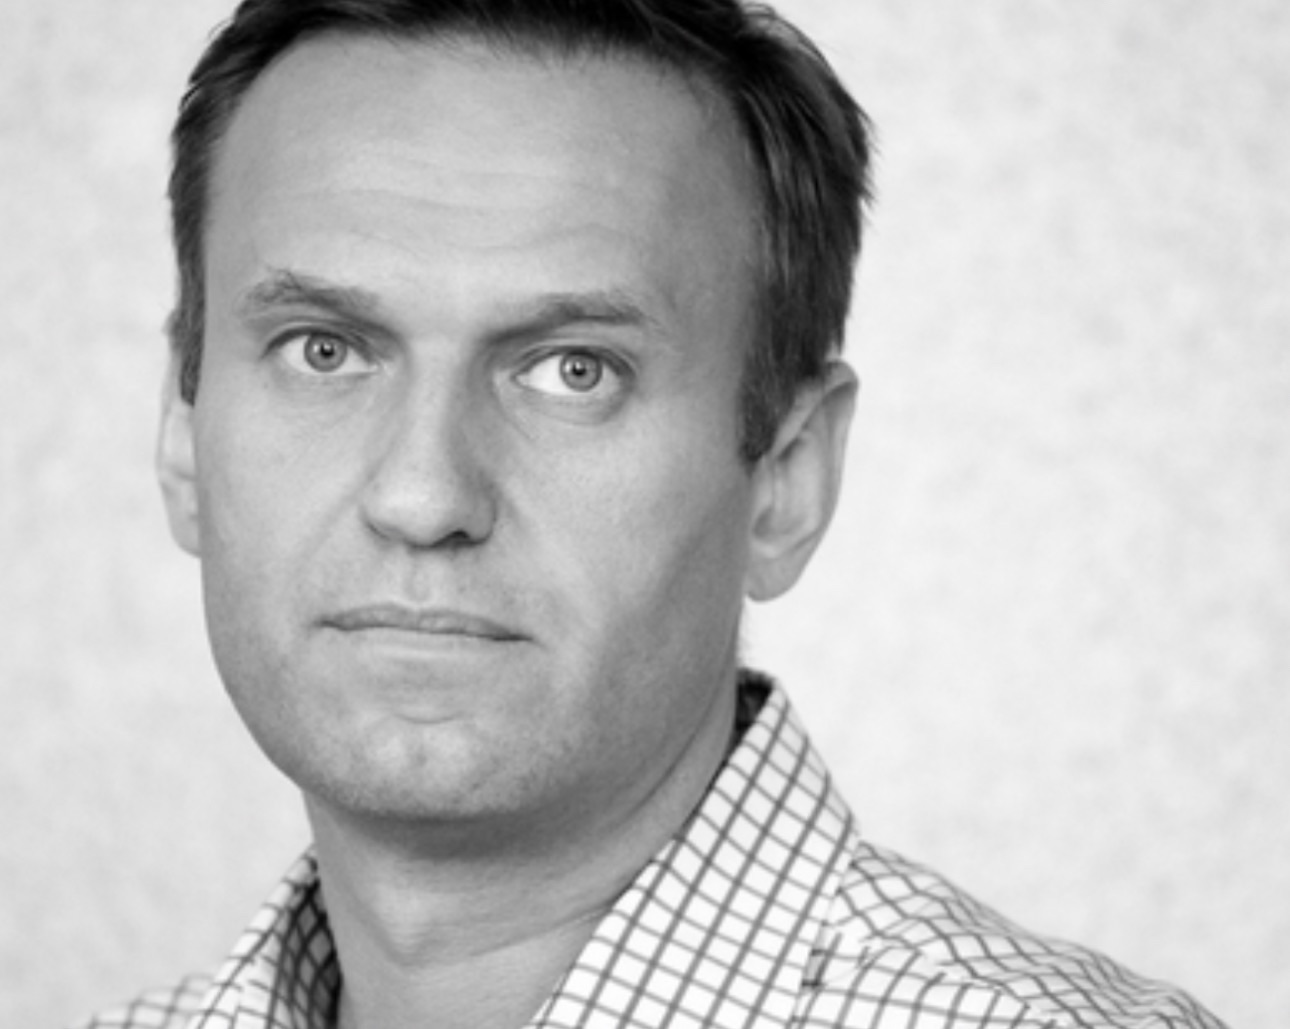 Alexei Anatoljewitsch Nawalny: Russlands prominenter Oppositionsführer stirbt unter mysteriösen Umständen